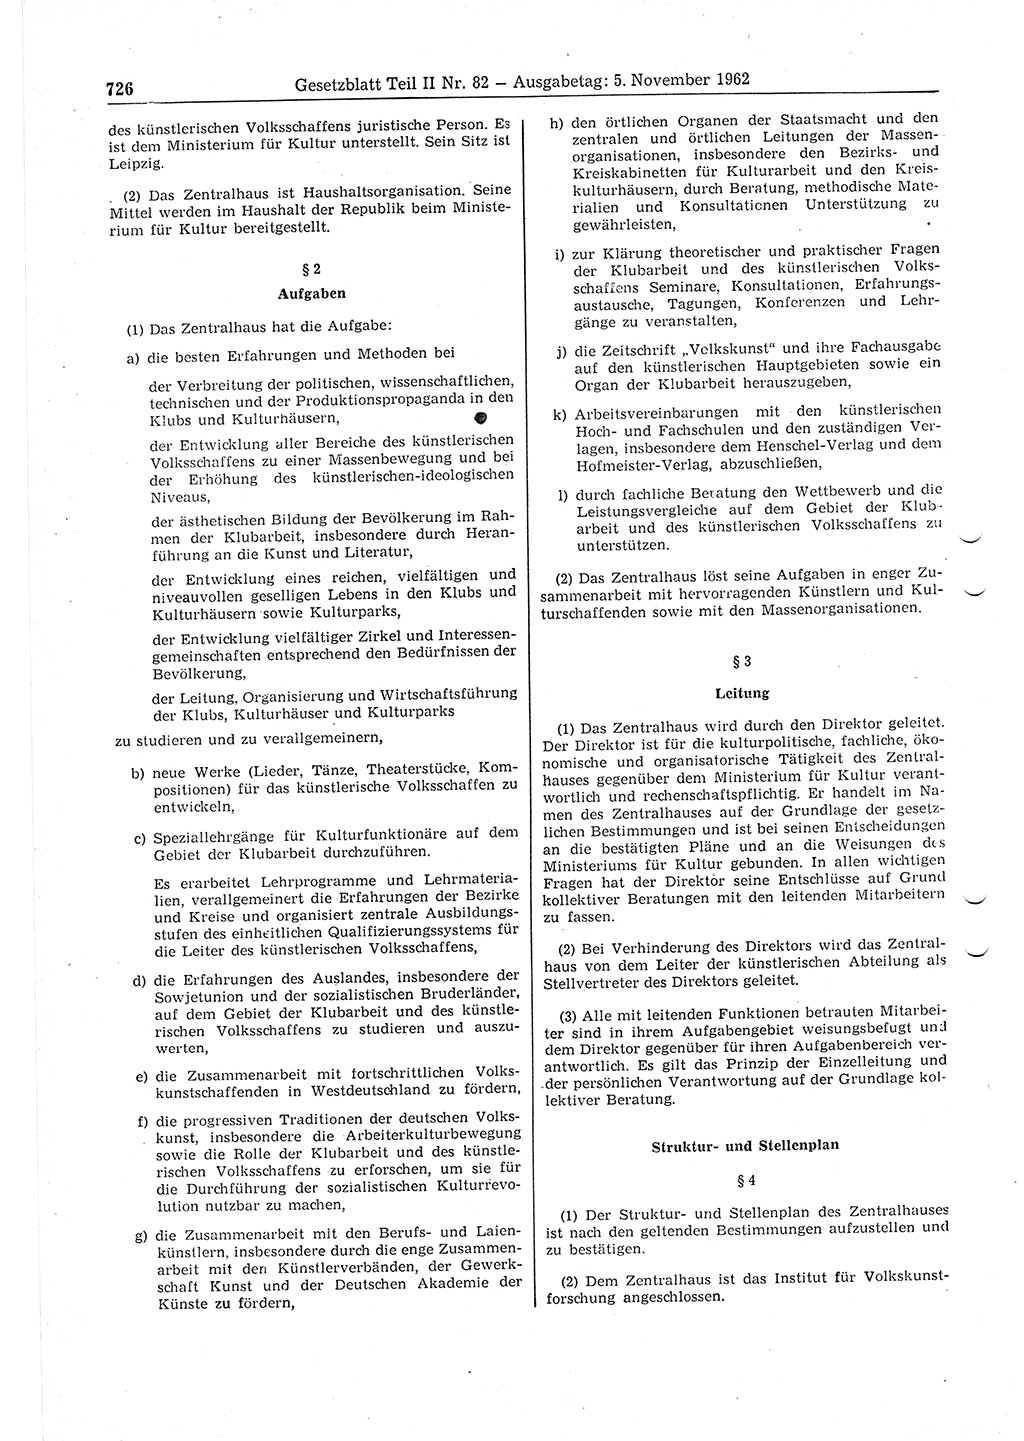 Gesetzblatt (GBl.) der Deutschen Demokratischen Republik (DDR) Teil ⅠⅠ 1962, Seite 726 (GBl. DDR ⅠⅠ 1962, S. 726)